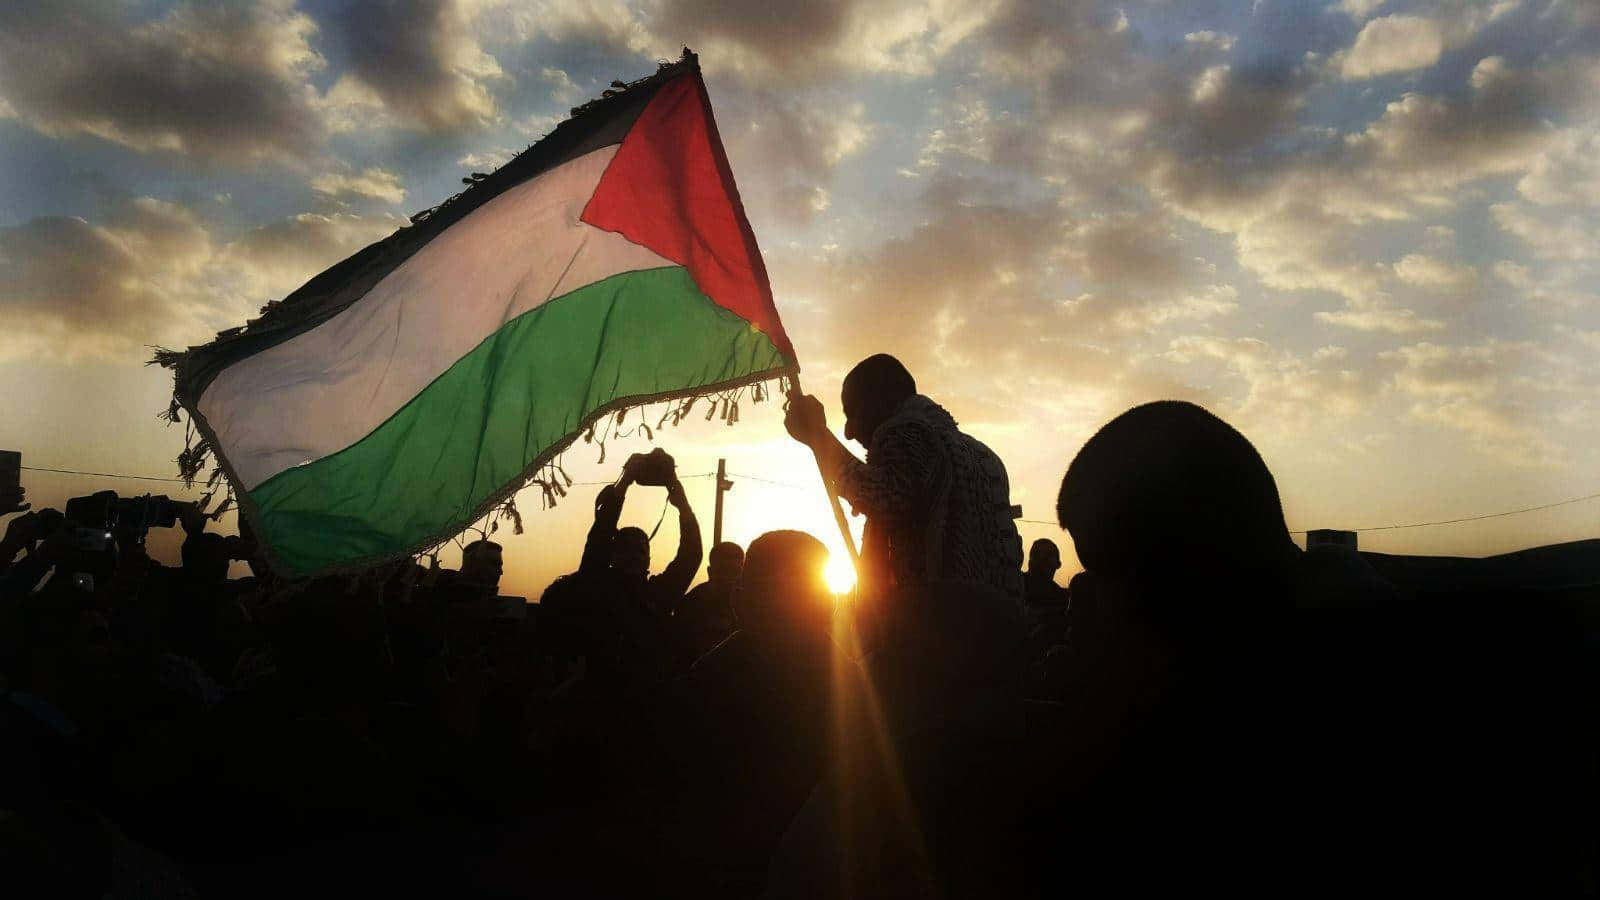 Enmand Holder En Palæstinensisk Flag Op I Solen.